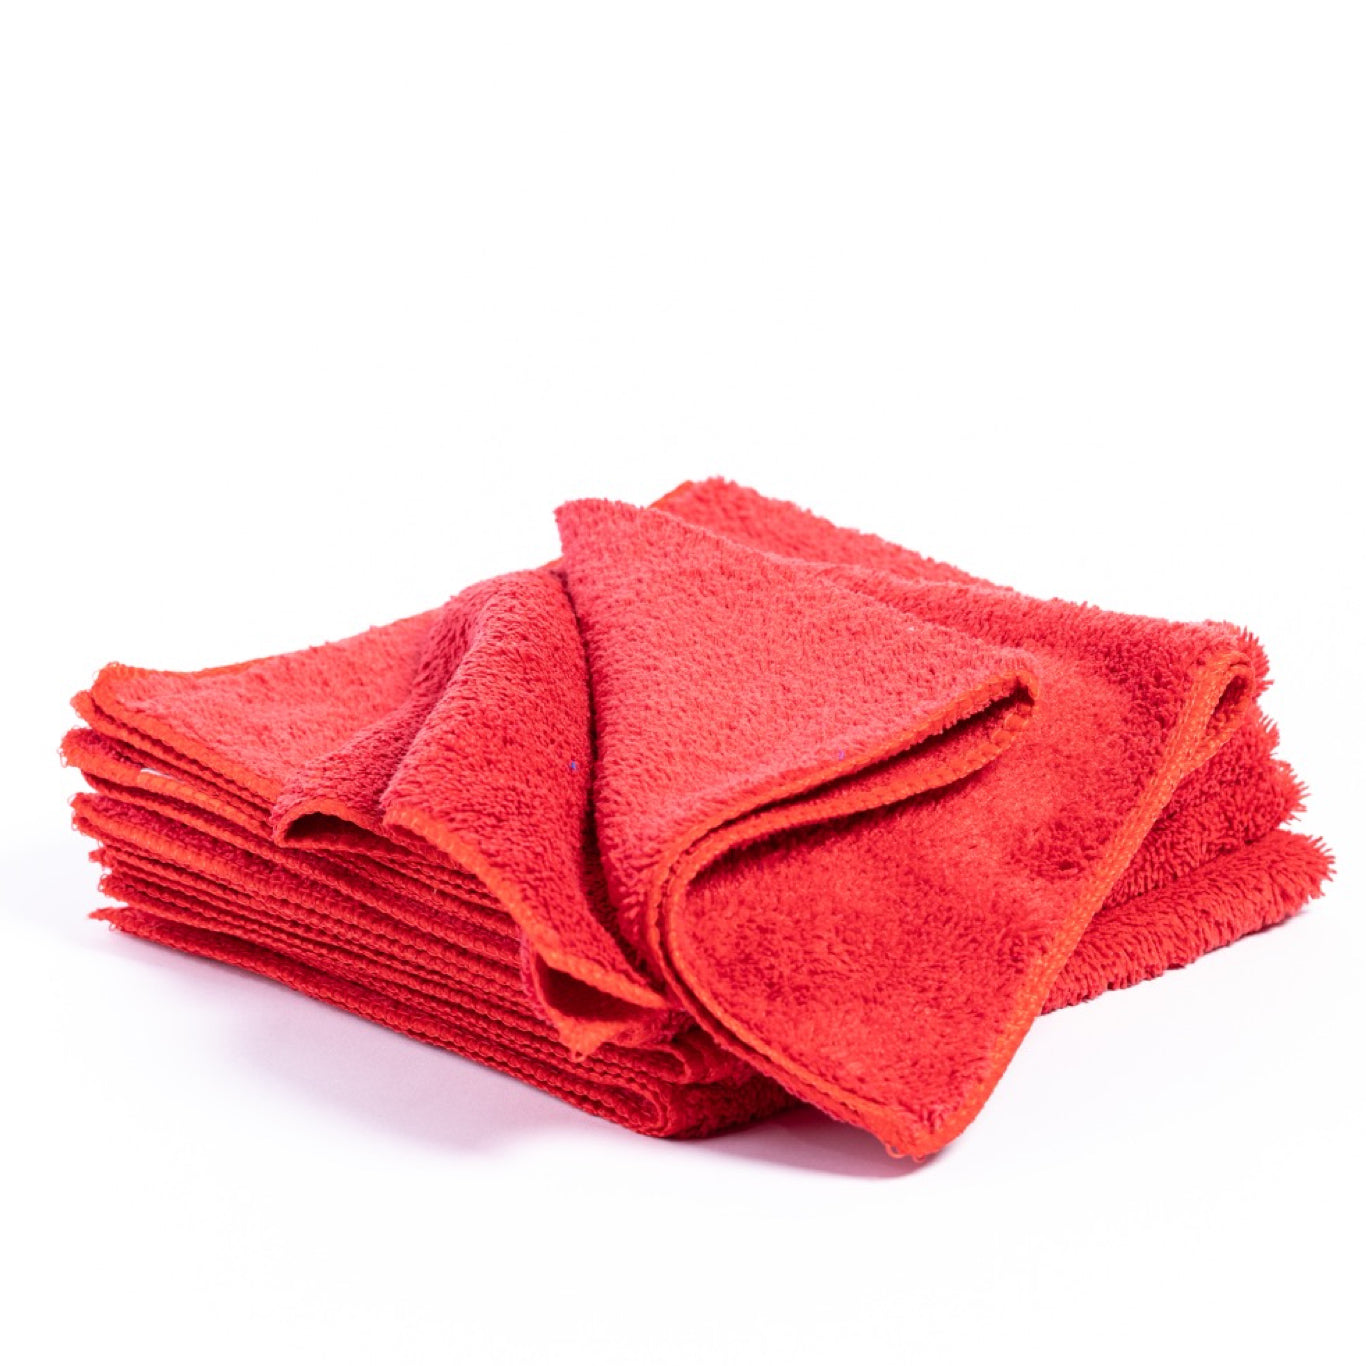 Fibreking premium car detailing Microfibre Towels Red